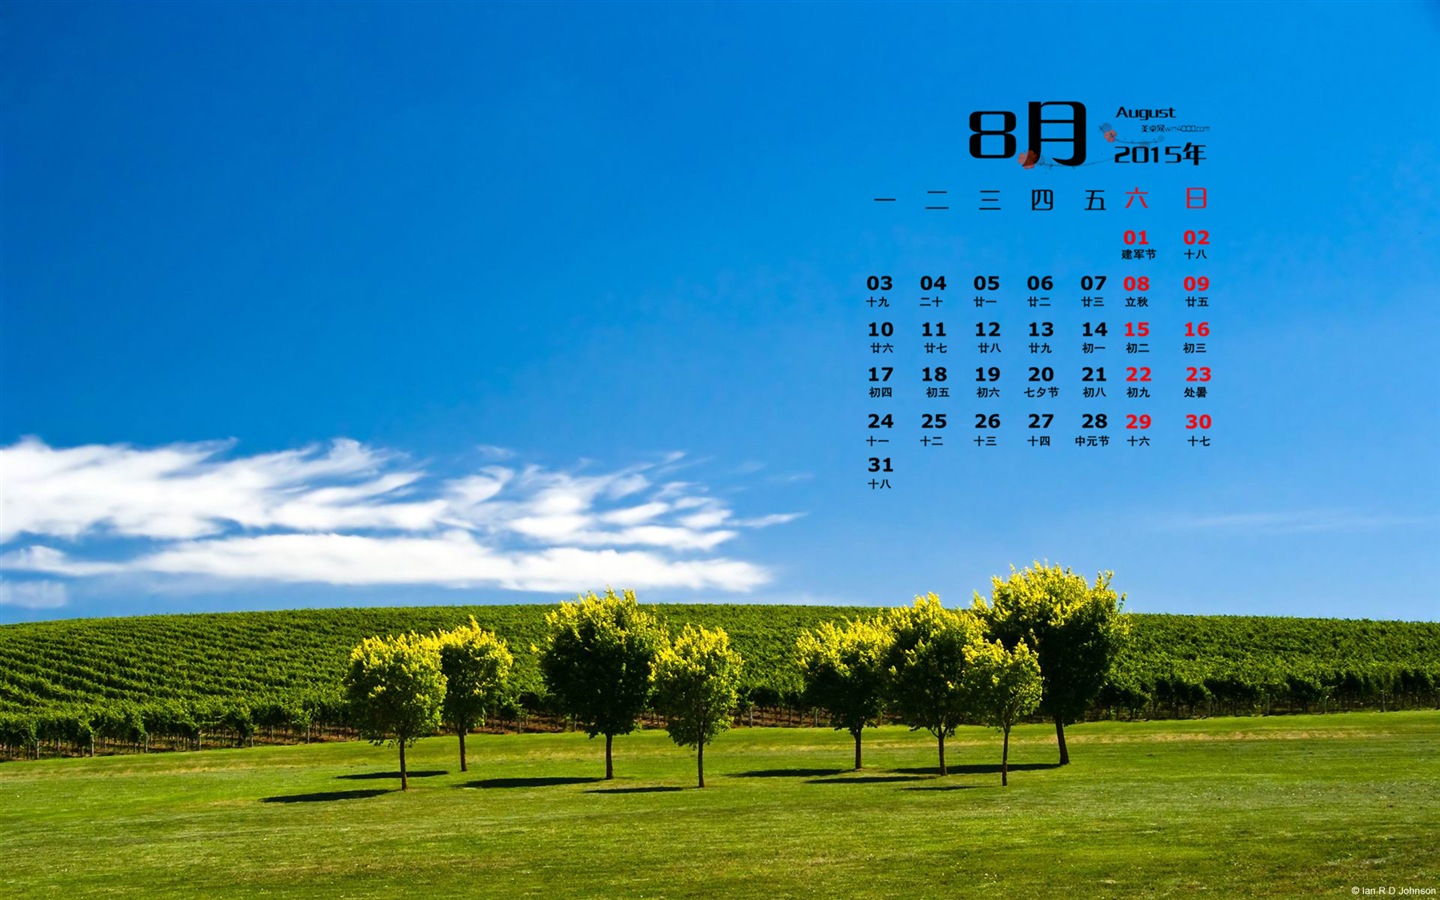 08. 2015 kalendář tapety (1) #18 - 1440x900